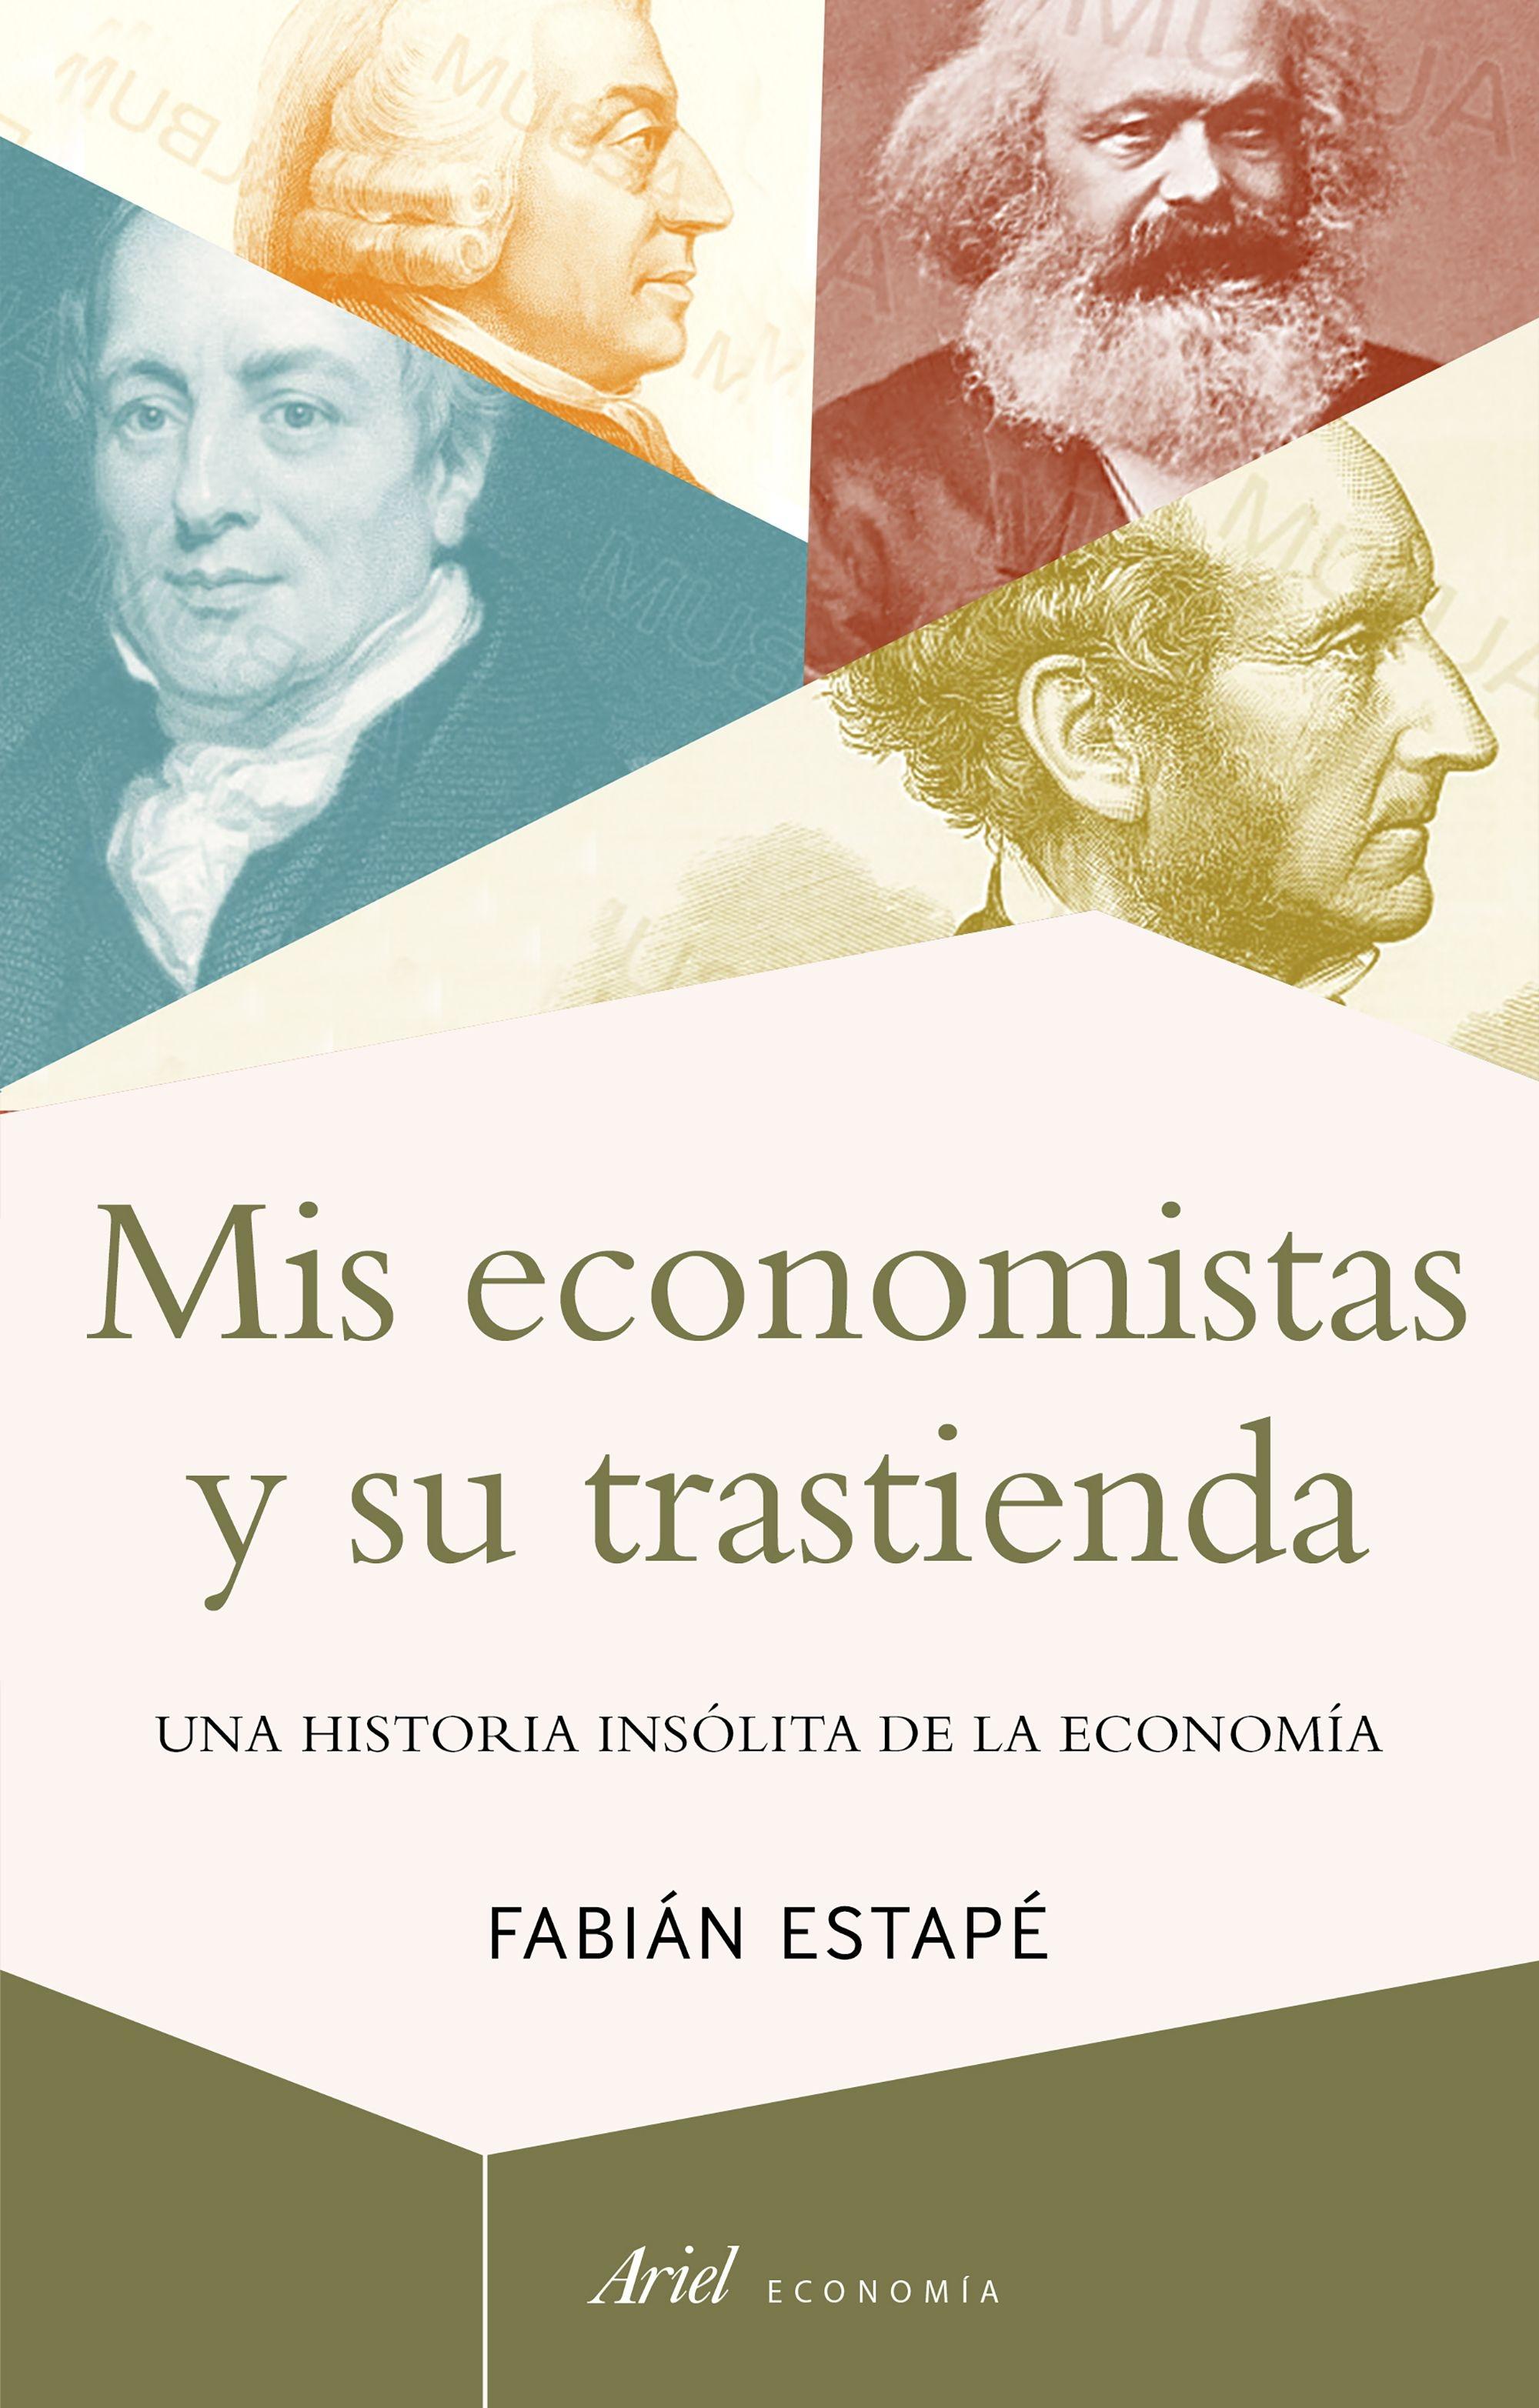 Mis economistas y su trastienda "Una historia insólita de la economía". 